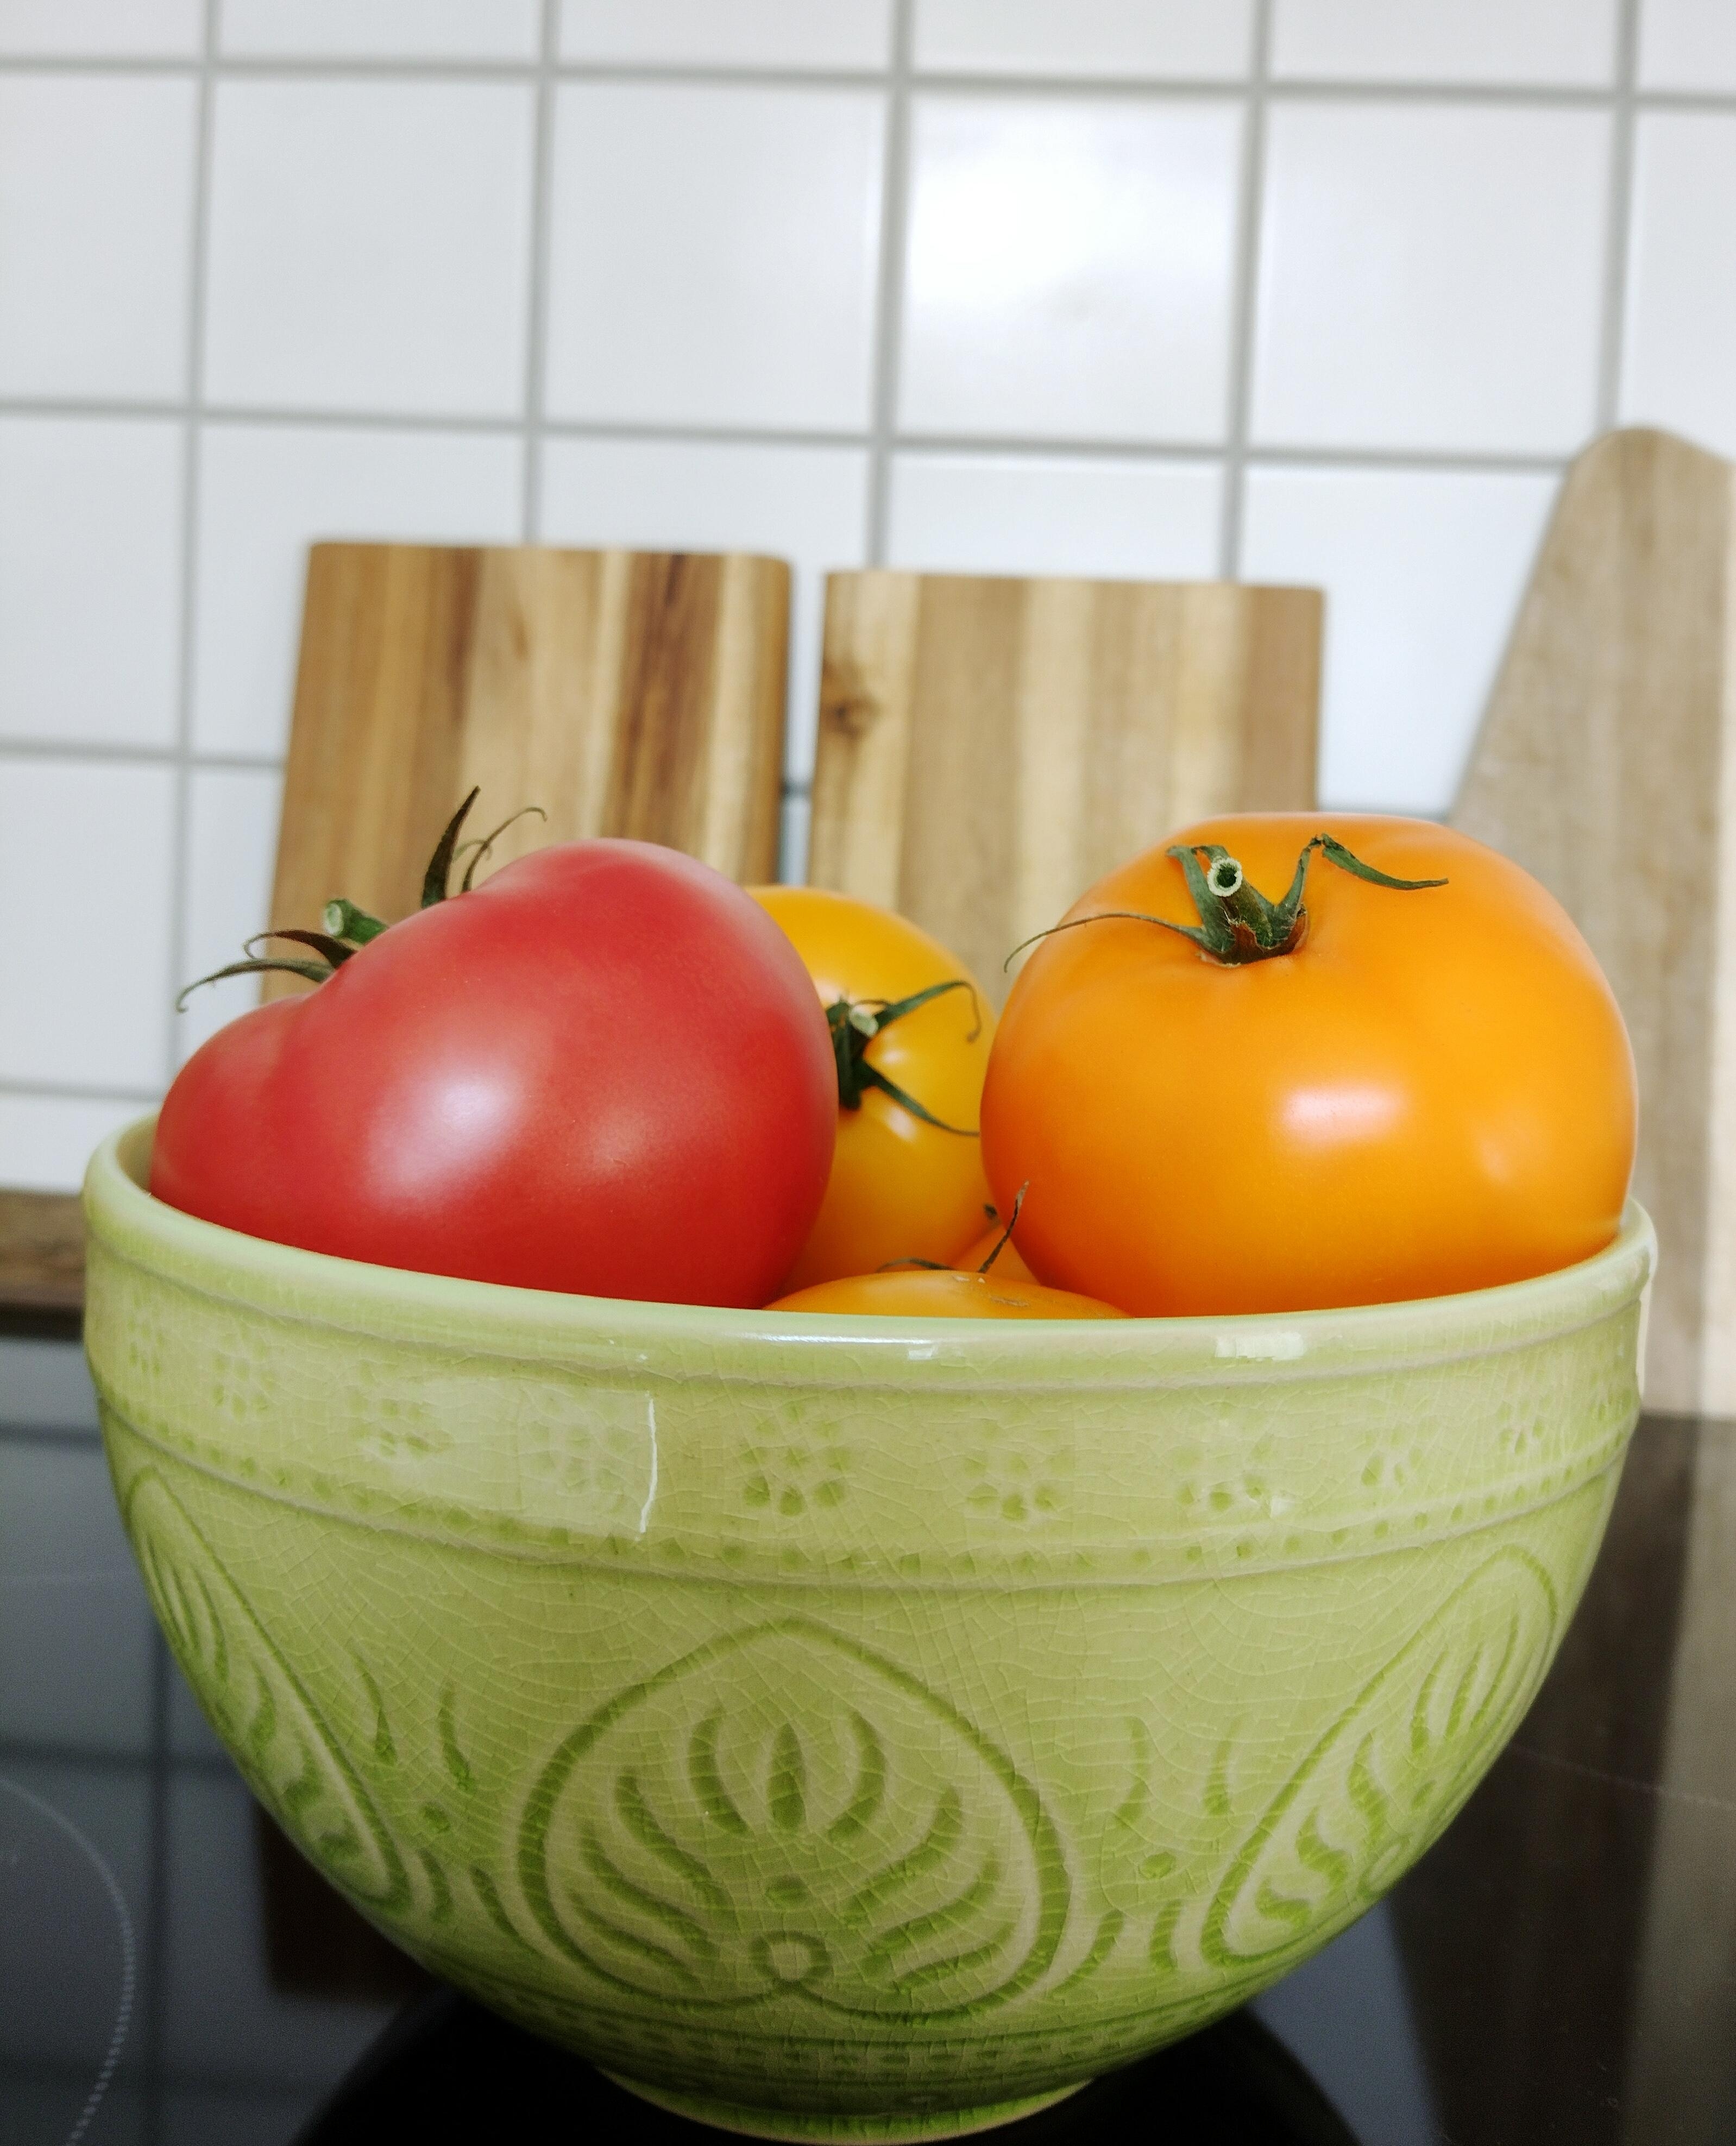 Obwohl ich keine #Tomaten essen darf, was mache ich? Kaufe ich mir doch Tomaten 🤦
#schale #küche #details